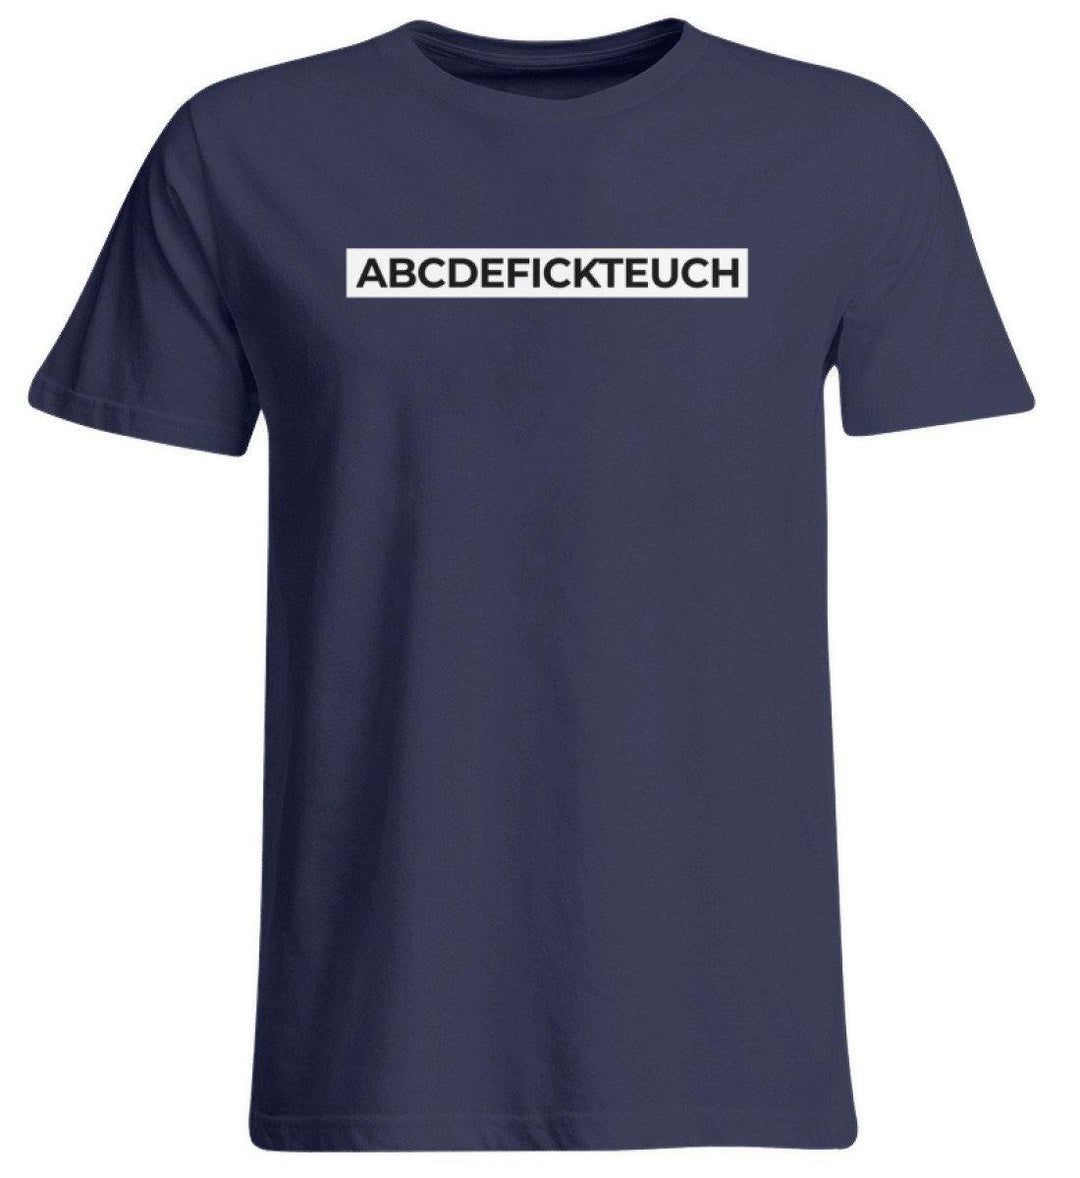 ABCDEFICKTEUCH - Words on Shirts  - Übergrößenshirt - Words on Shirts Sag es mit dem Mittelfinger Shirts Hoodies Sweatshirt Taschen Gymsack Spruch Sprüche Statement